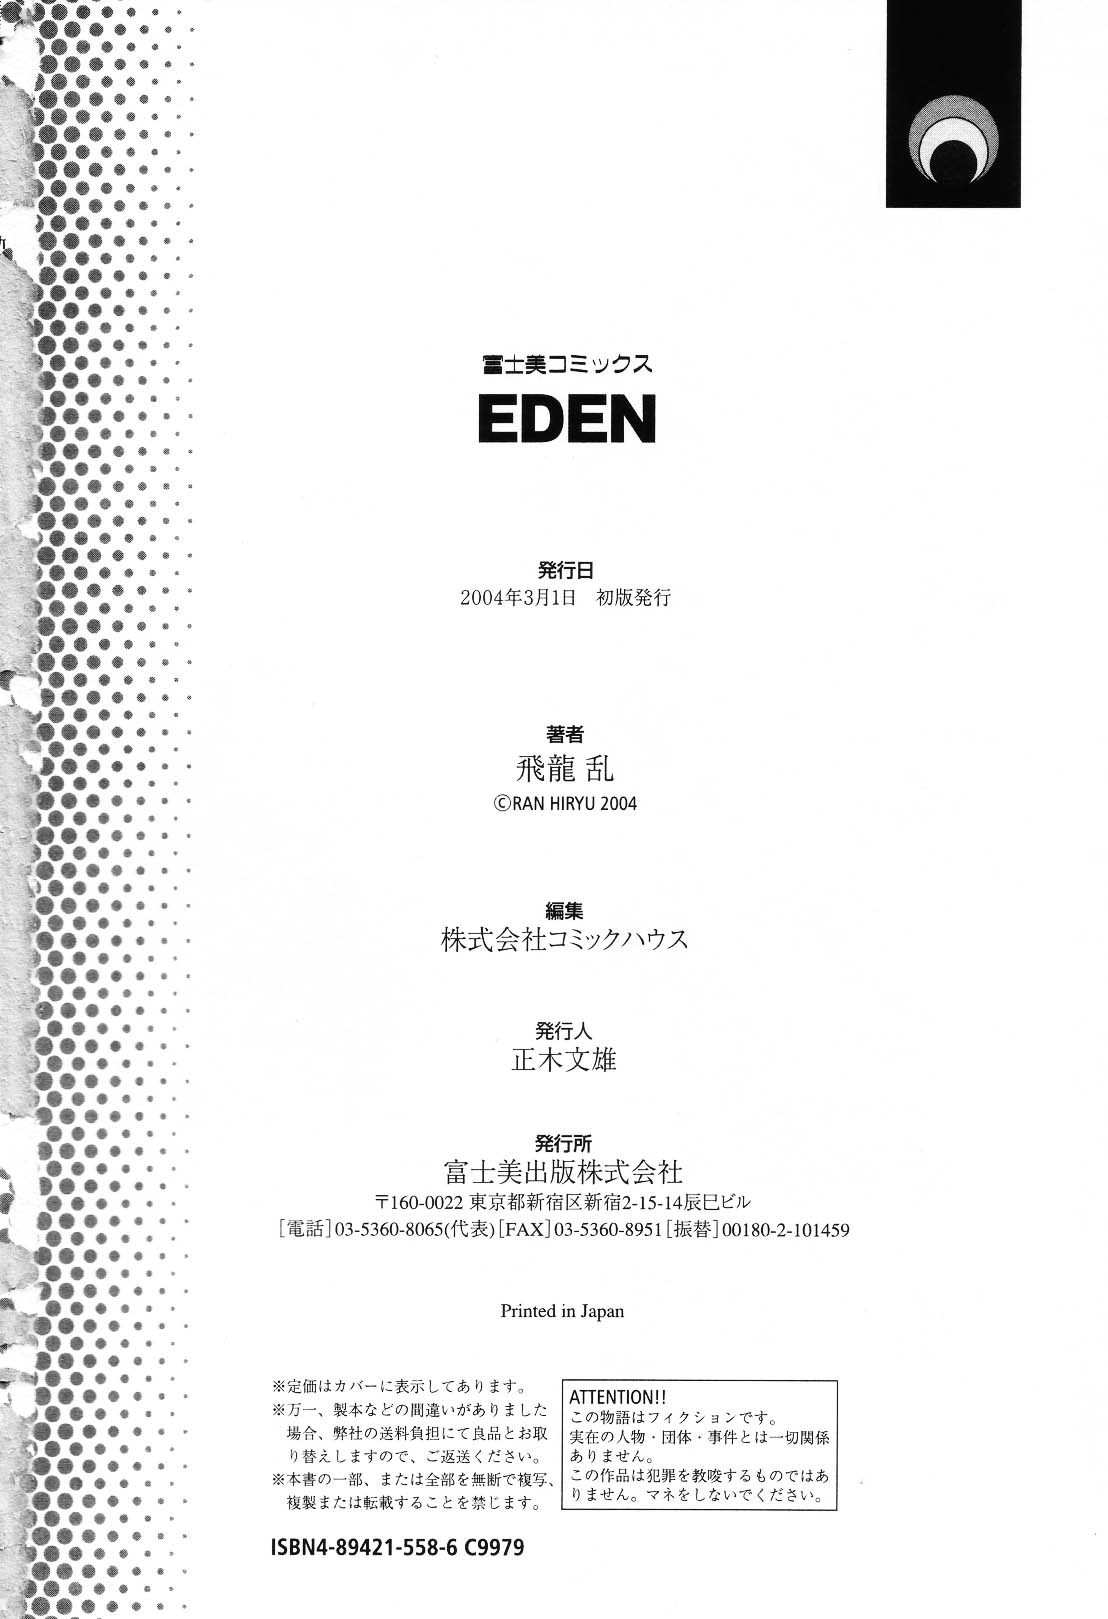 [Hiryuu Ran] EDEN [飛龍乱] EDEN